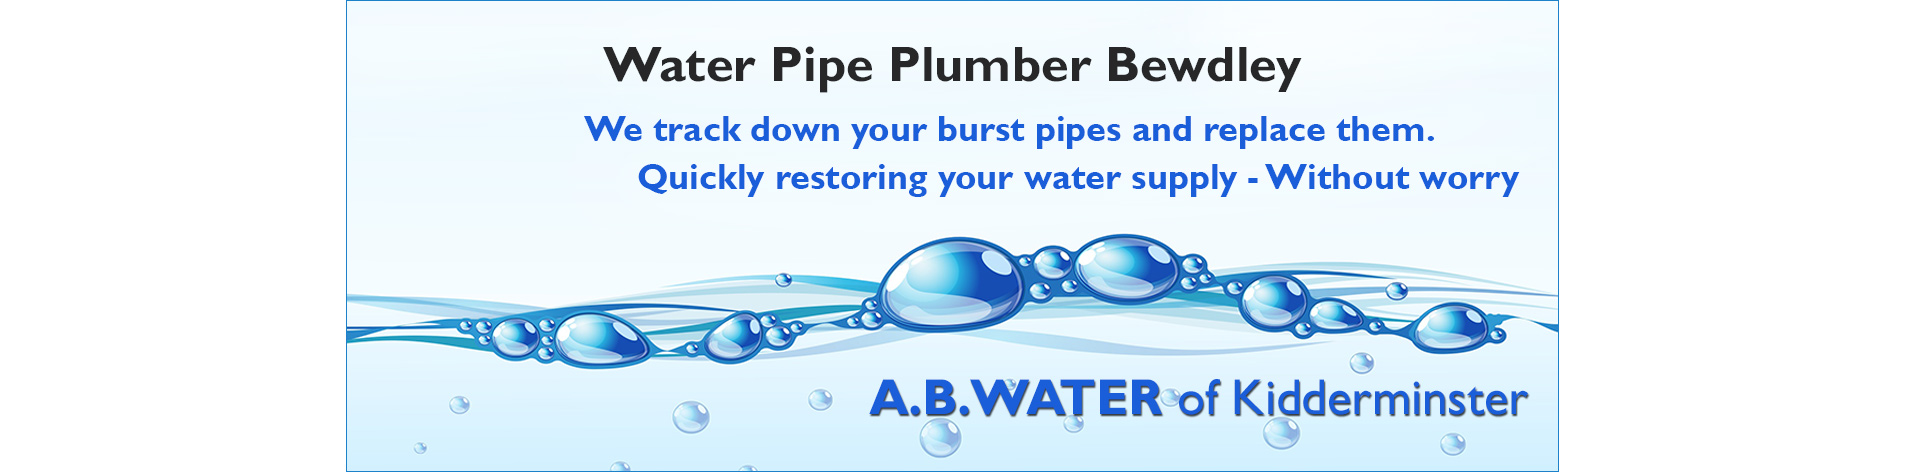 water-leak-plumber-bewdley